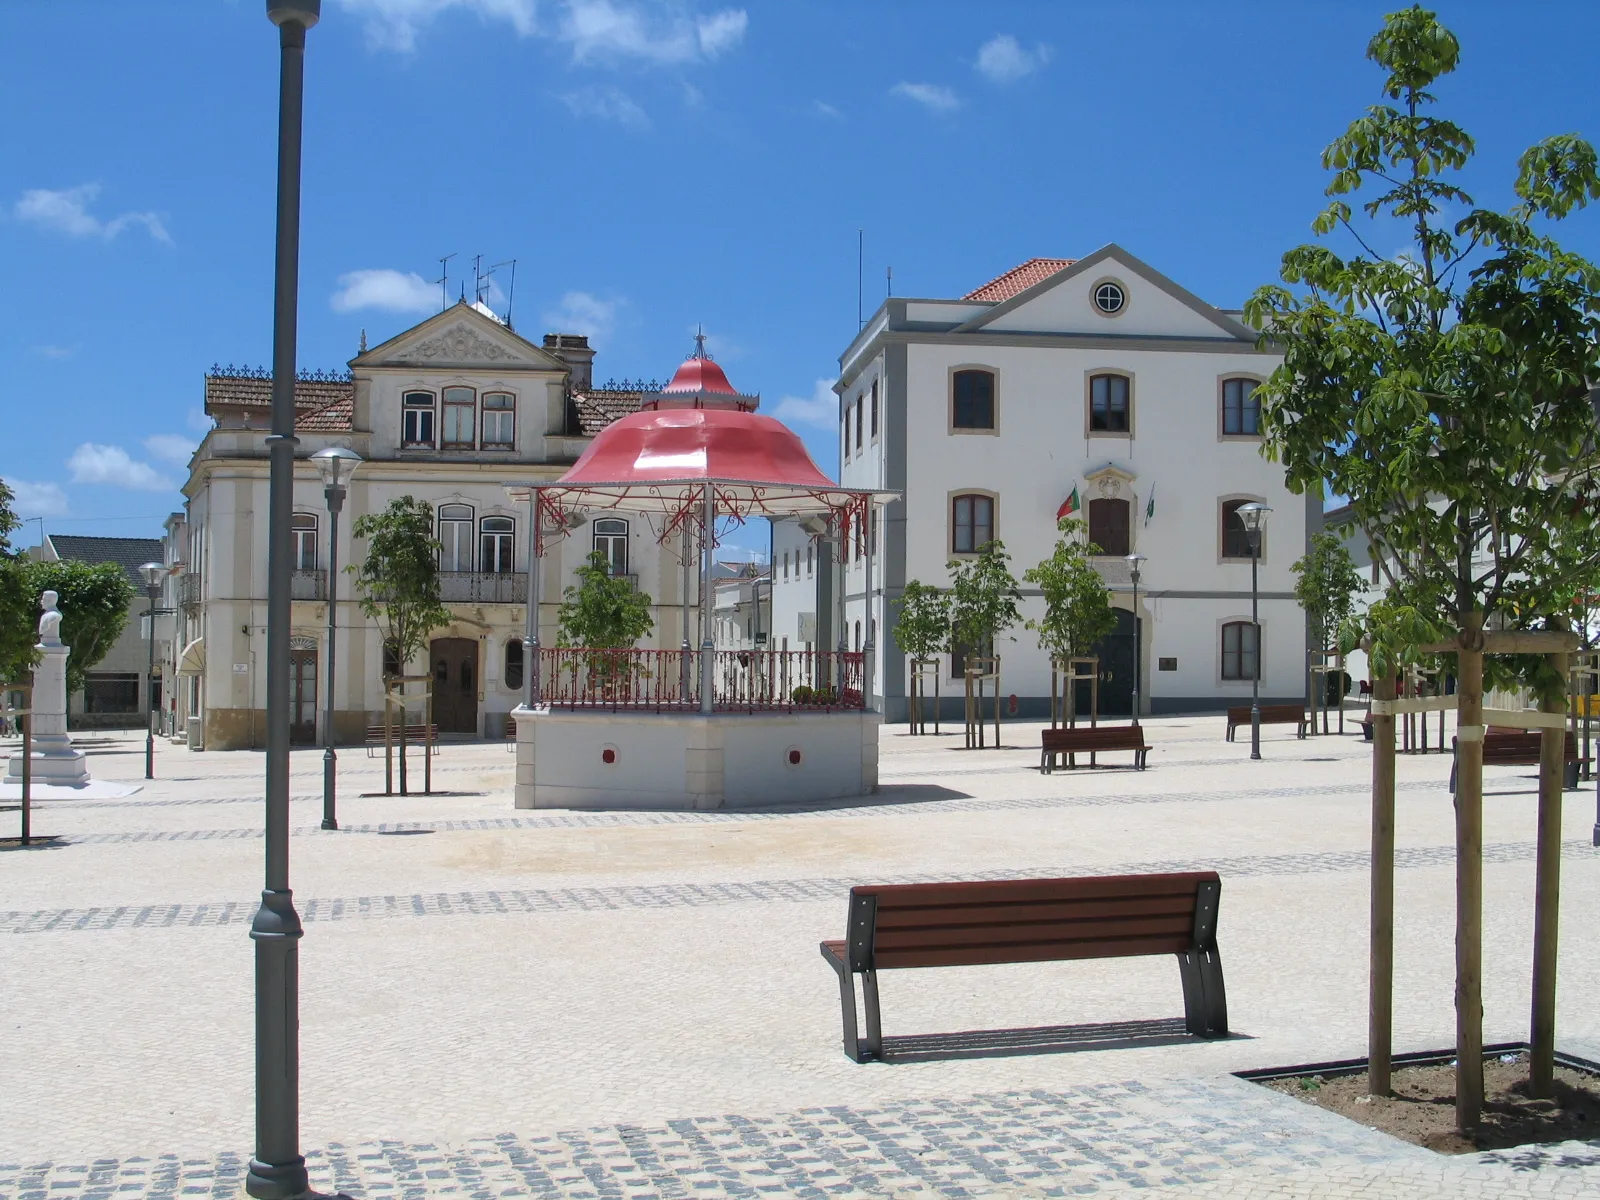 Image of Sobral de Monte Agraço